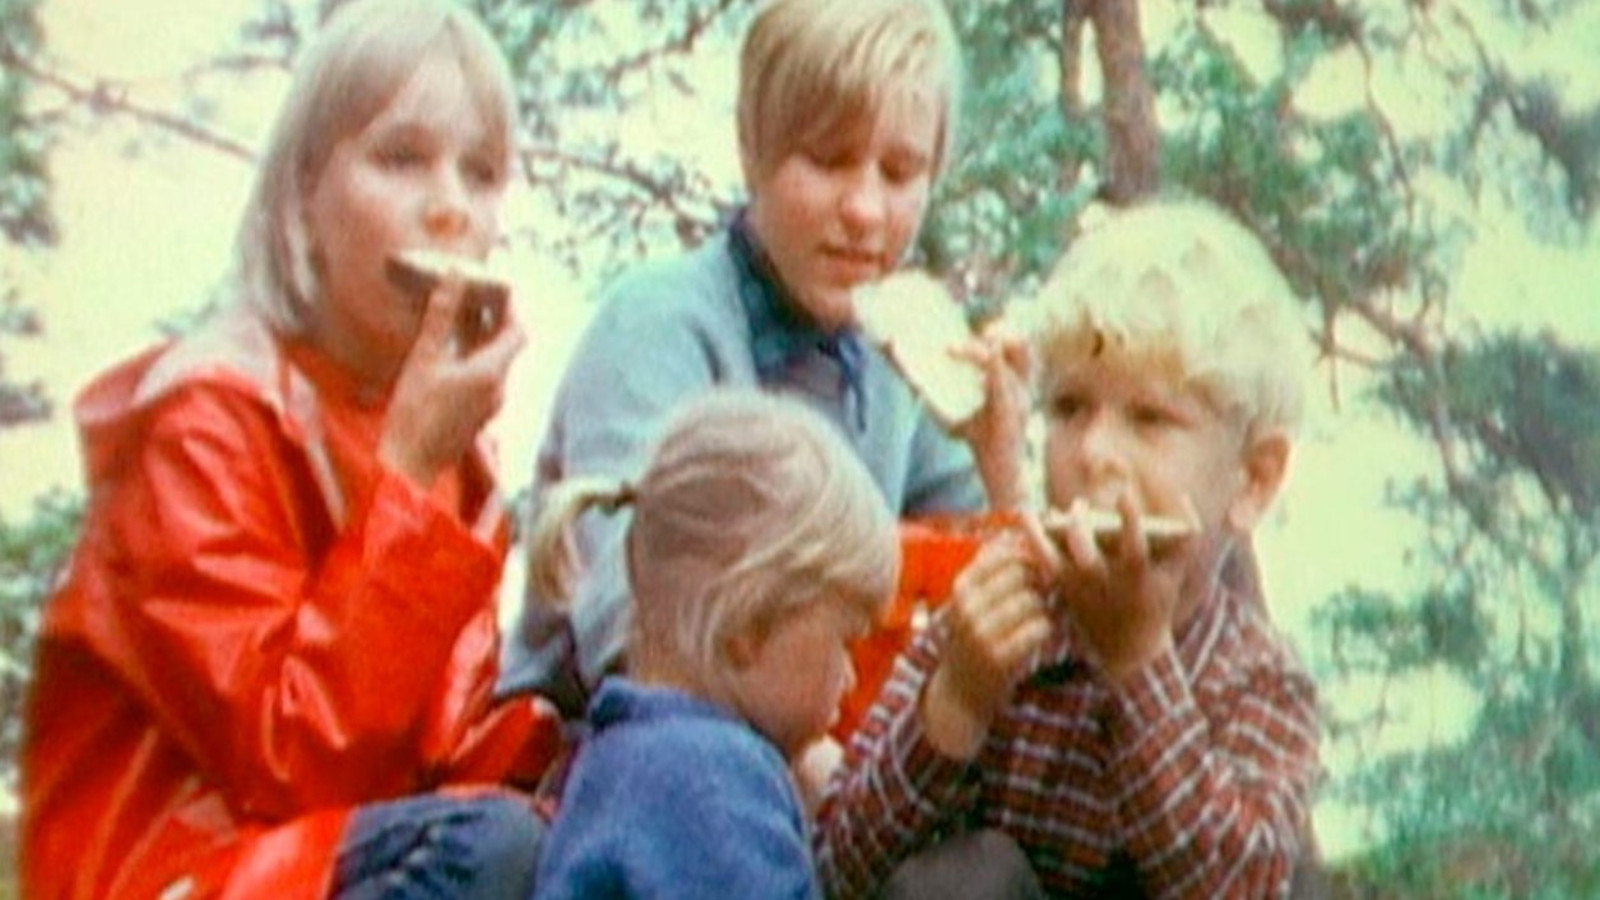 Kuvassa on lapsia syömäässä voileipiä luonnossa. Ylempänä on punaisessa sadetakissa tyttö ja vaalean sinisessä puserossa. Lapset ovat vanhempia kuin alempana oleva pienempi tyttö sivuttain ja kasvot näkyvissä pienempi poika.